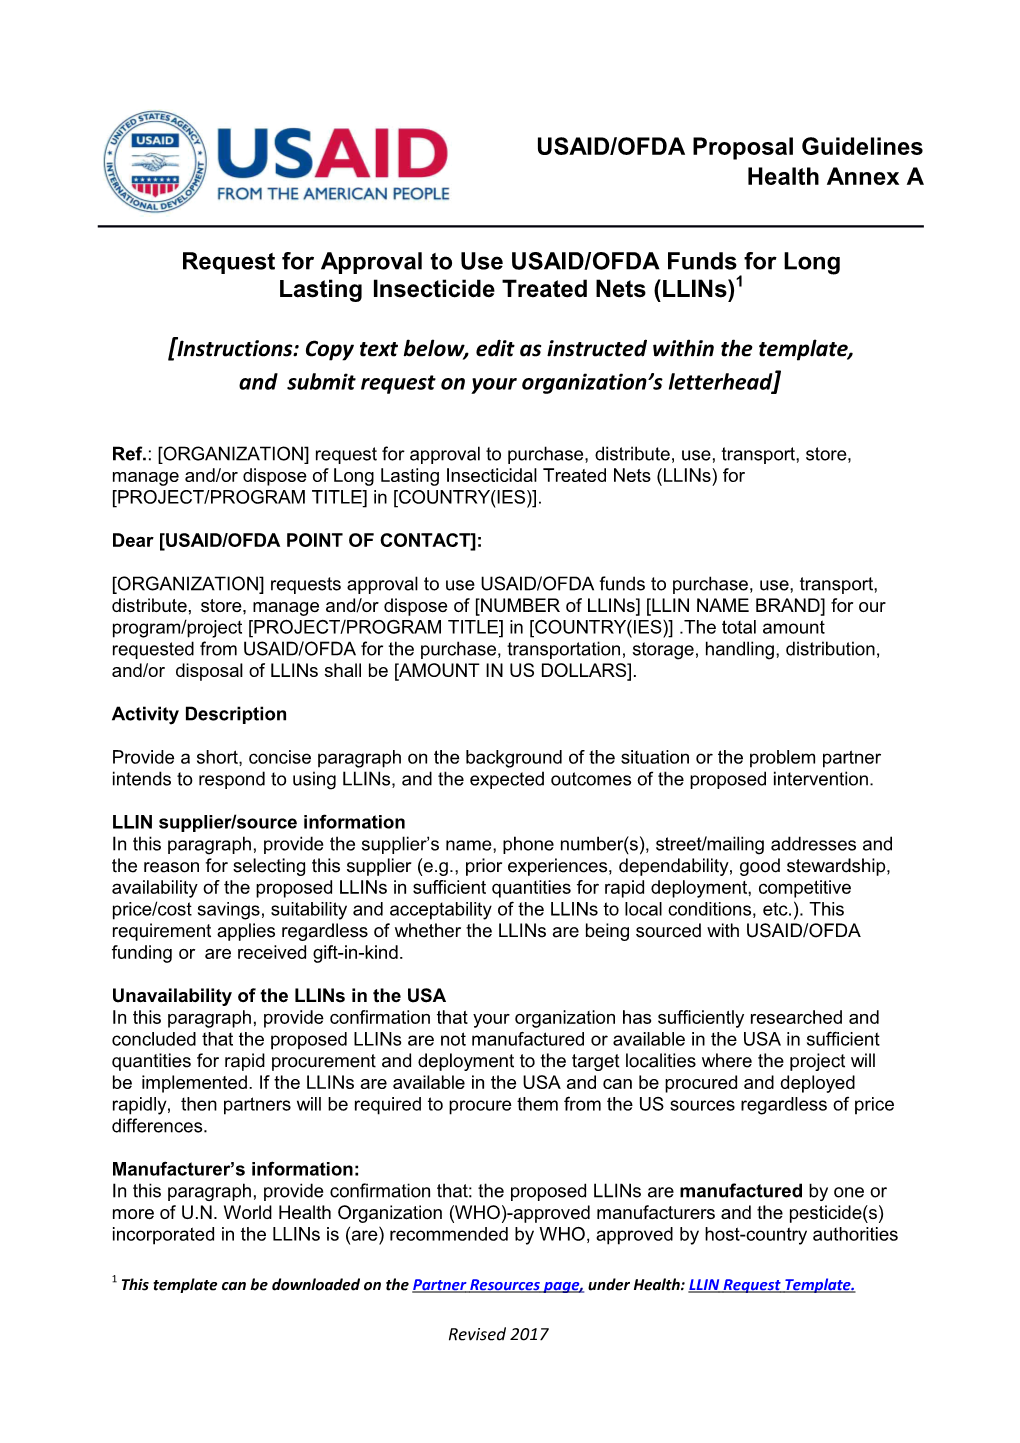 USAID/OFDA LLIN Request